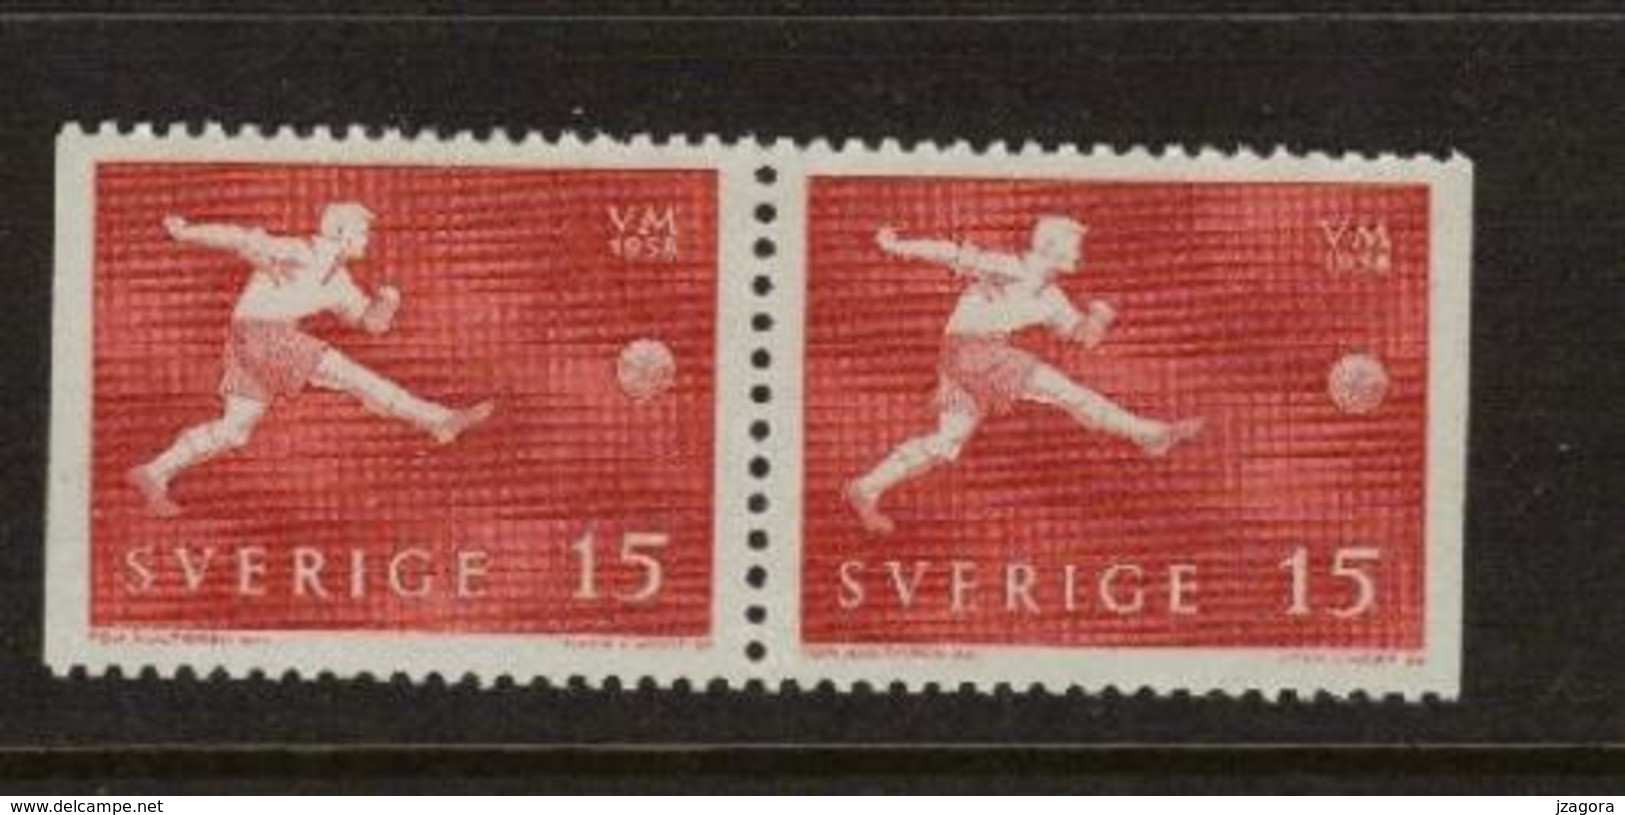 SOCCER FOOTBALL WORLD CHAMPIONSHIP - MUNDIAL 1958 - SWEDEN SCHWEDEN SUEDE MI 438 Dl\Dr MNH - 1958 – Schweden